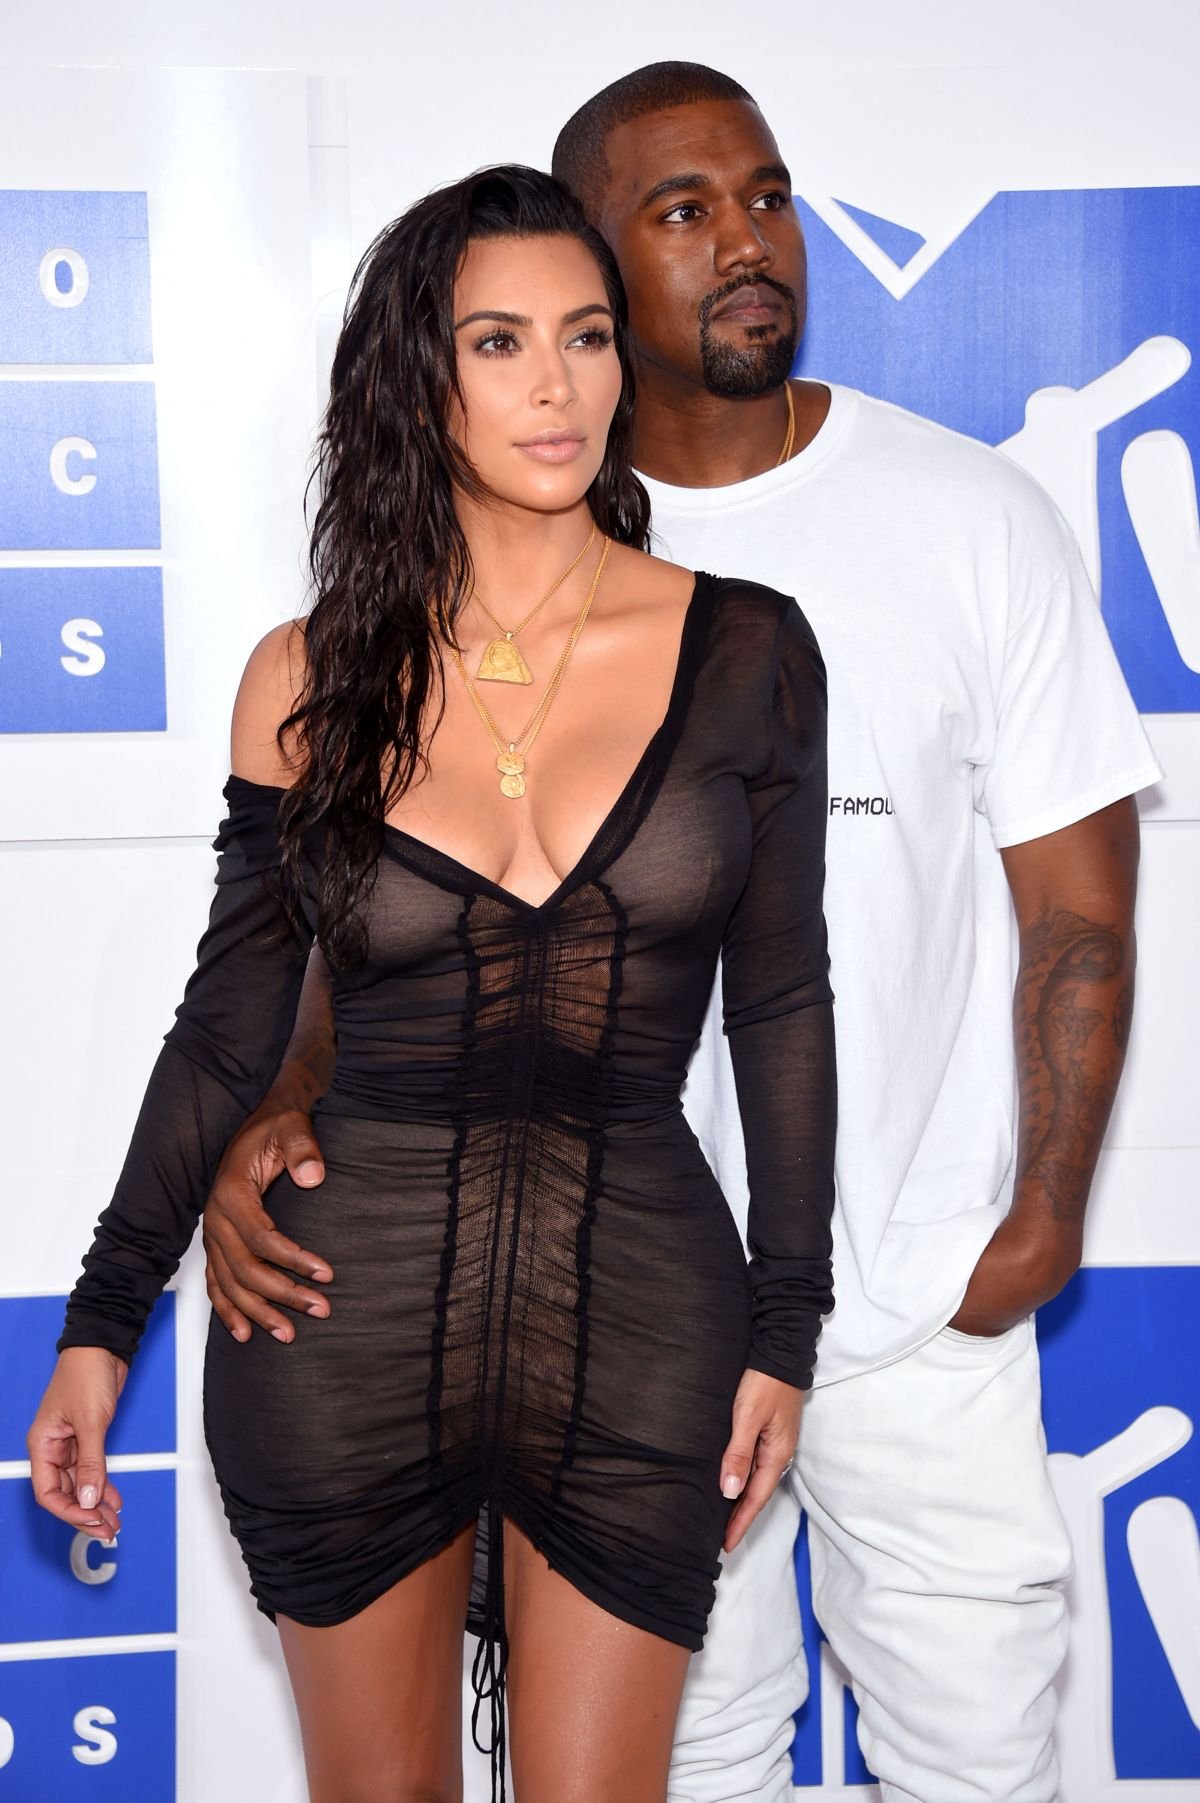 Ким Кардашьян выбрала очень откровенный наряд для MTV Video Music Awards 2016